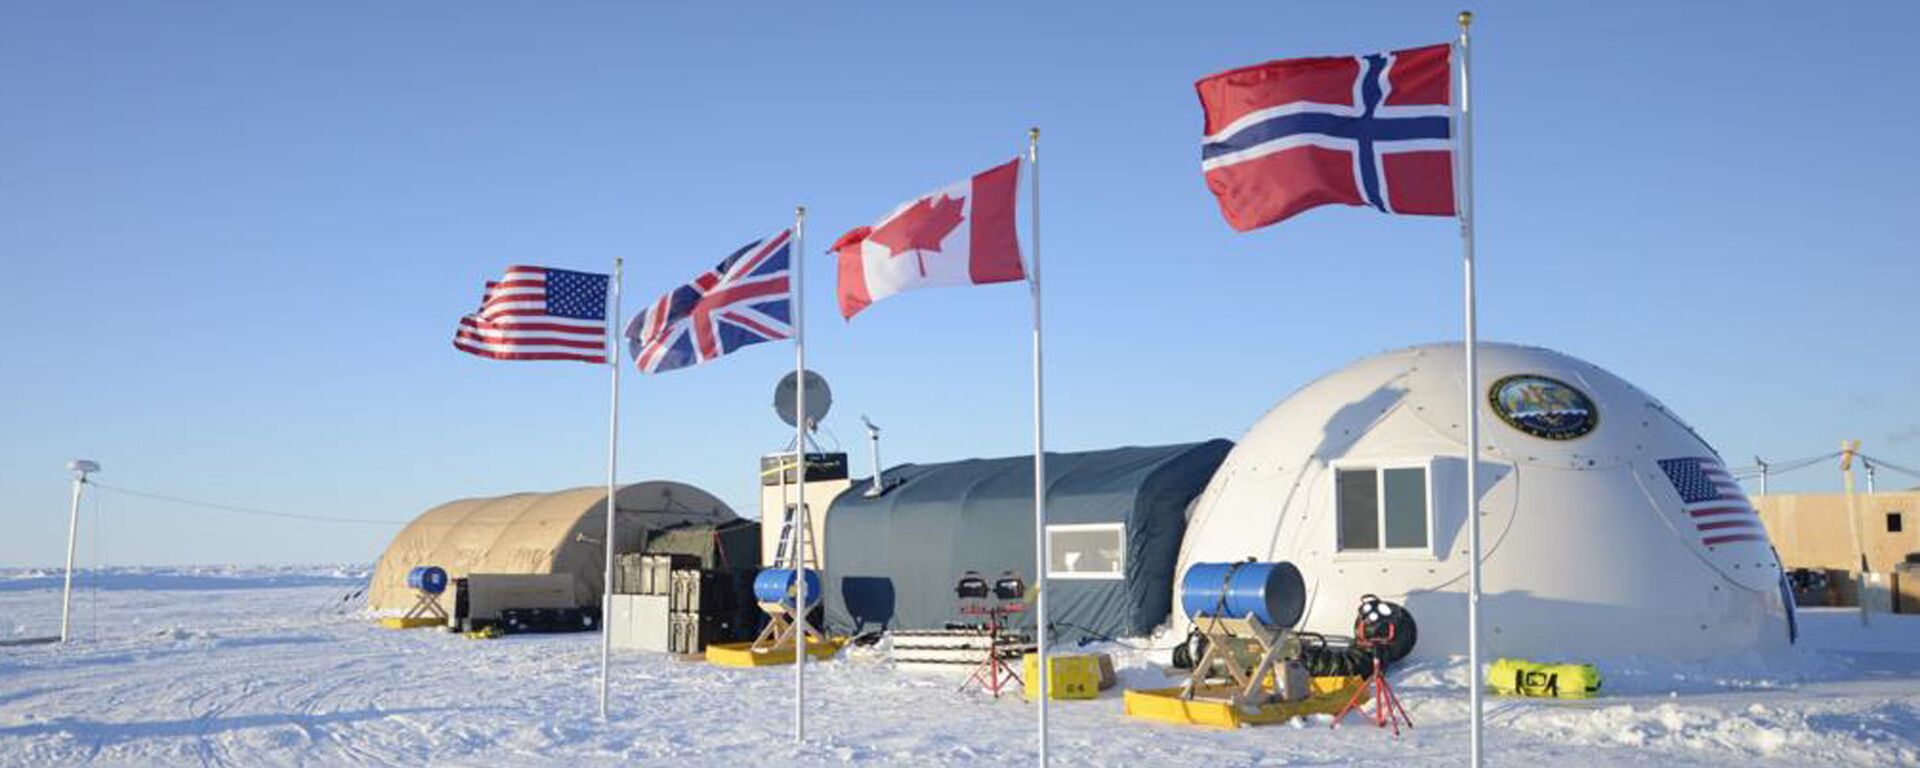 Campamento militar de EEUU, Reino Unido, Canadá y Noruega en el Ártico (archivo) - Sputnik Mundo, 1920, 11.03.2021